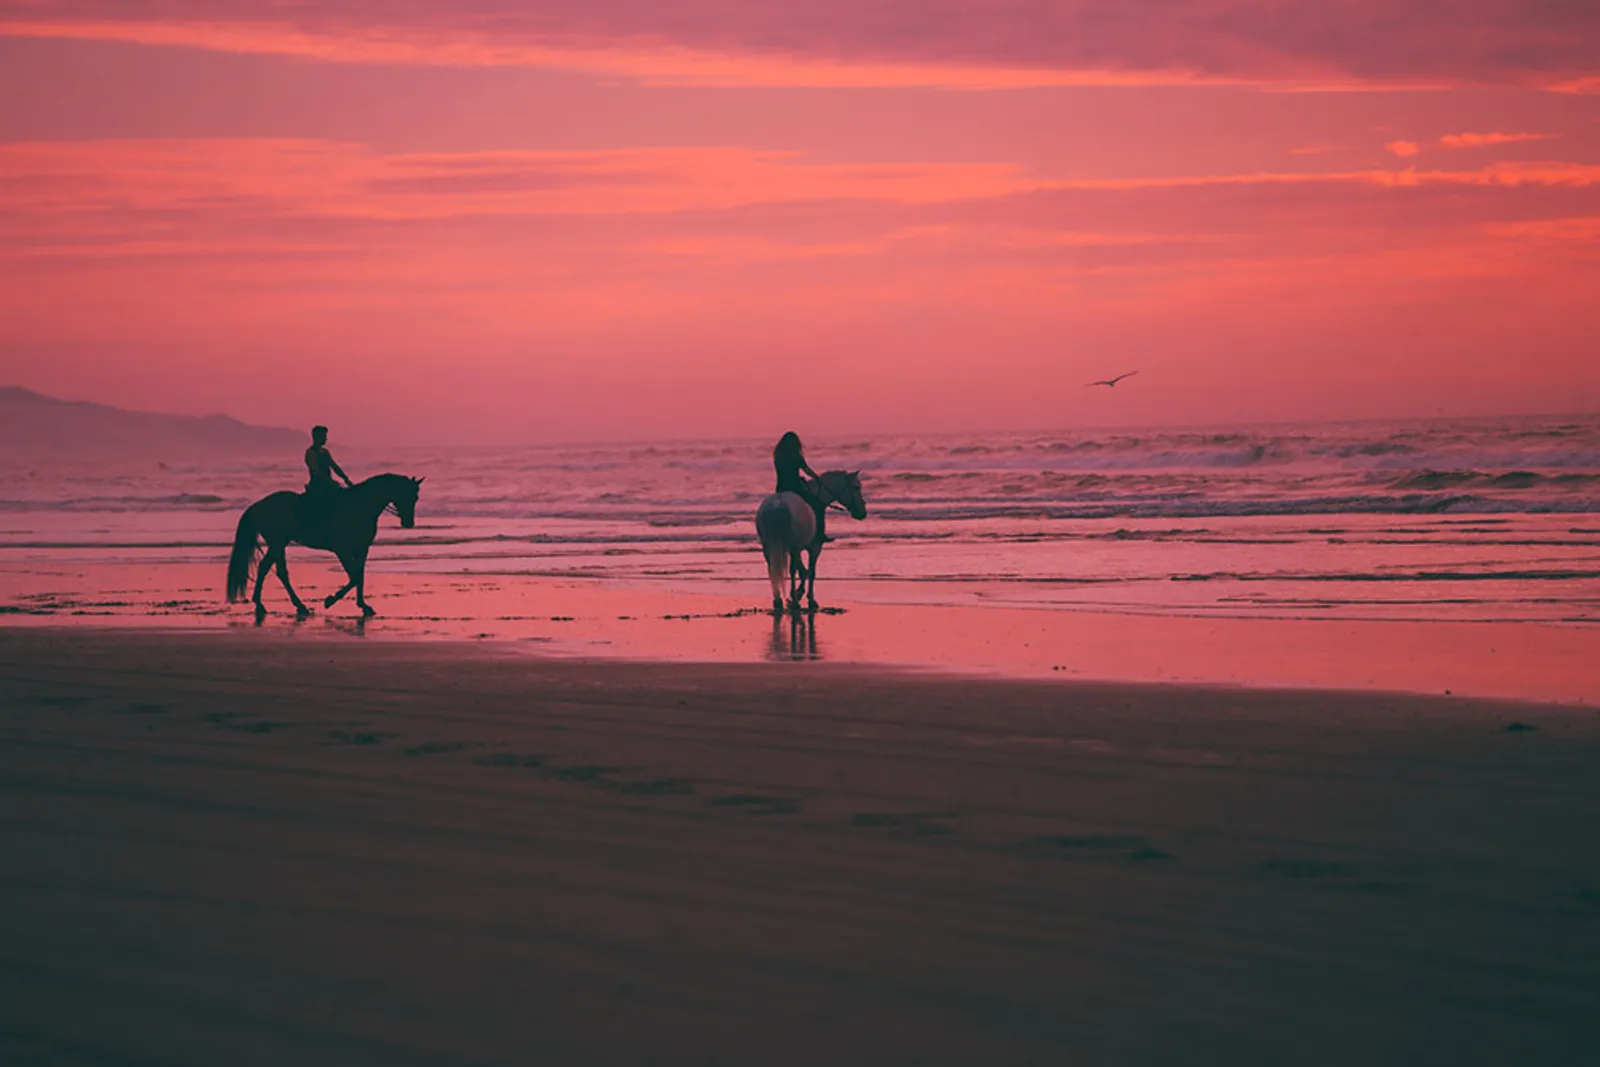 9 Pantai Berpasir Pink Ini Cocok Buat Destinasi Romantis Saat Valentine